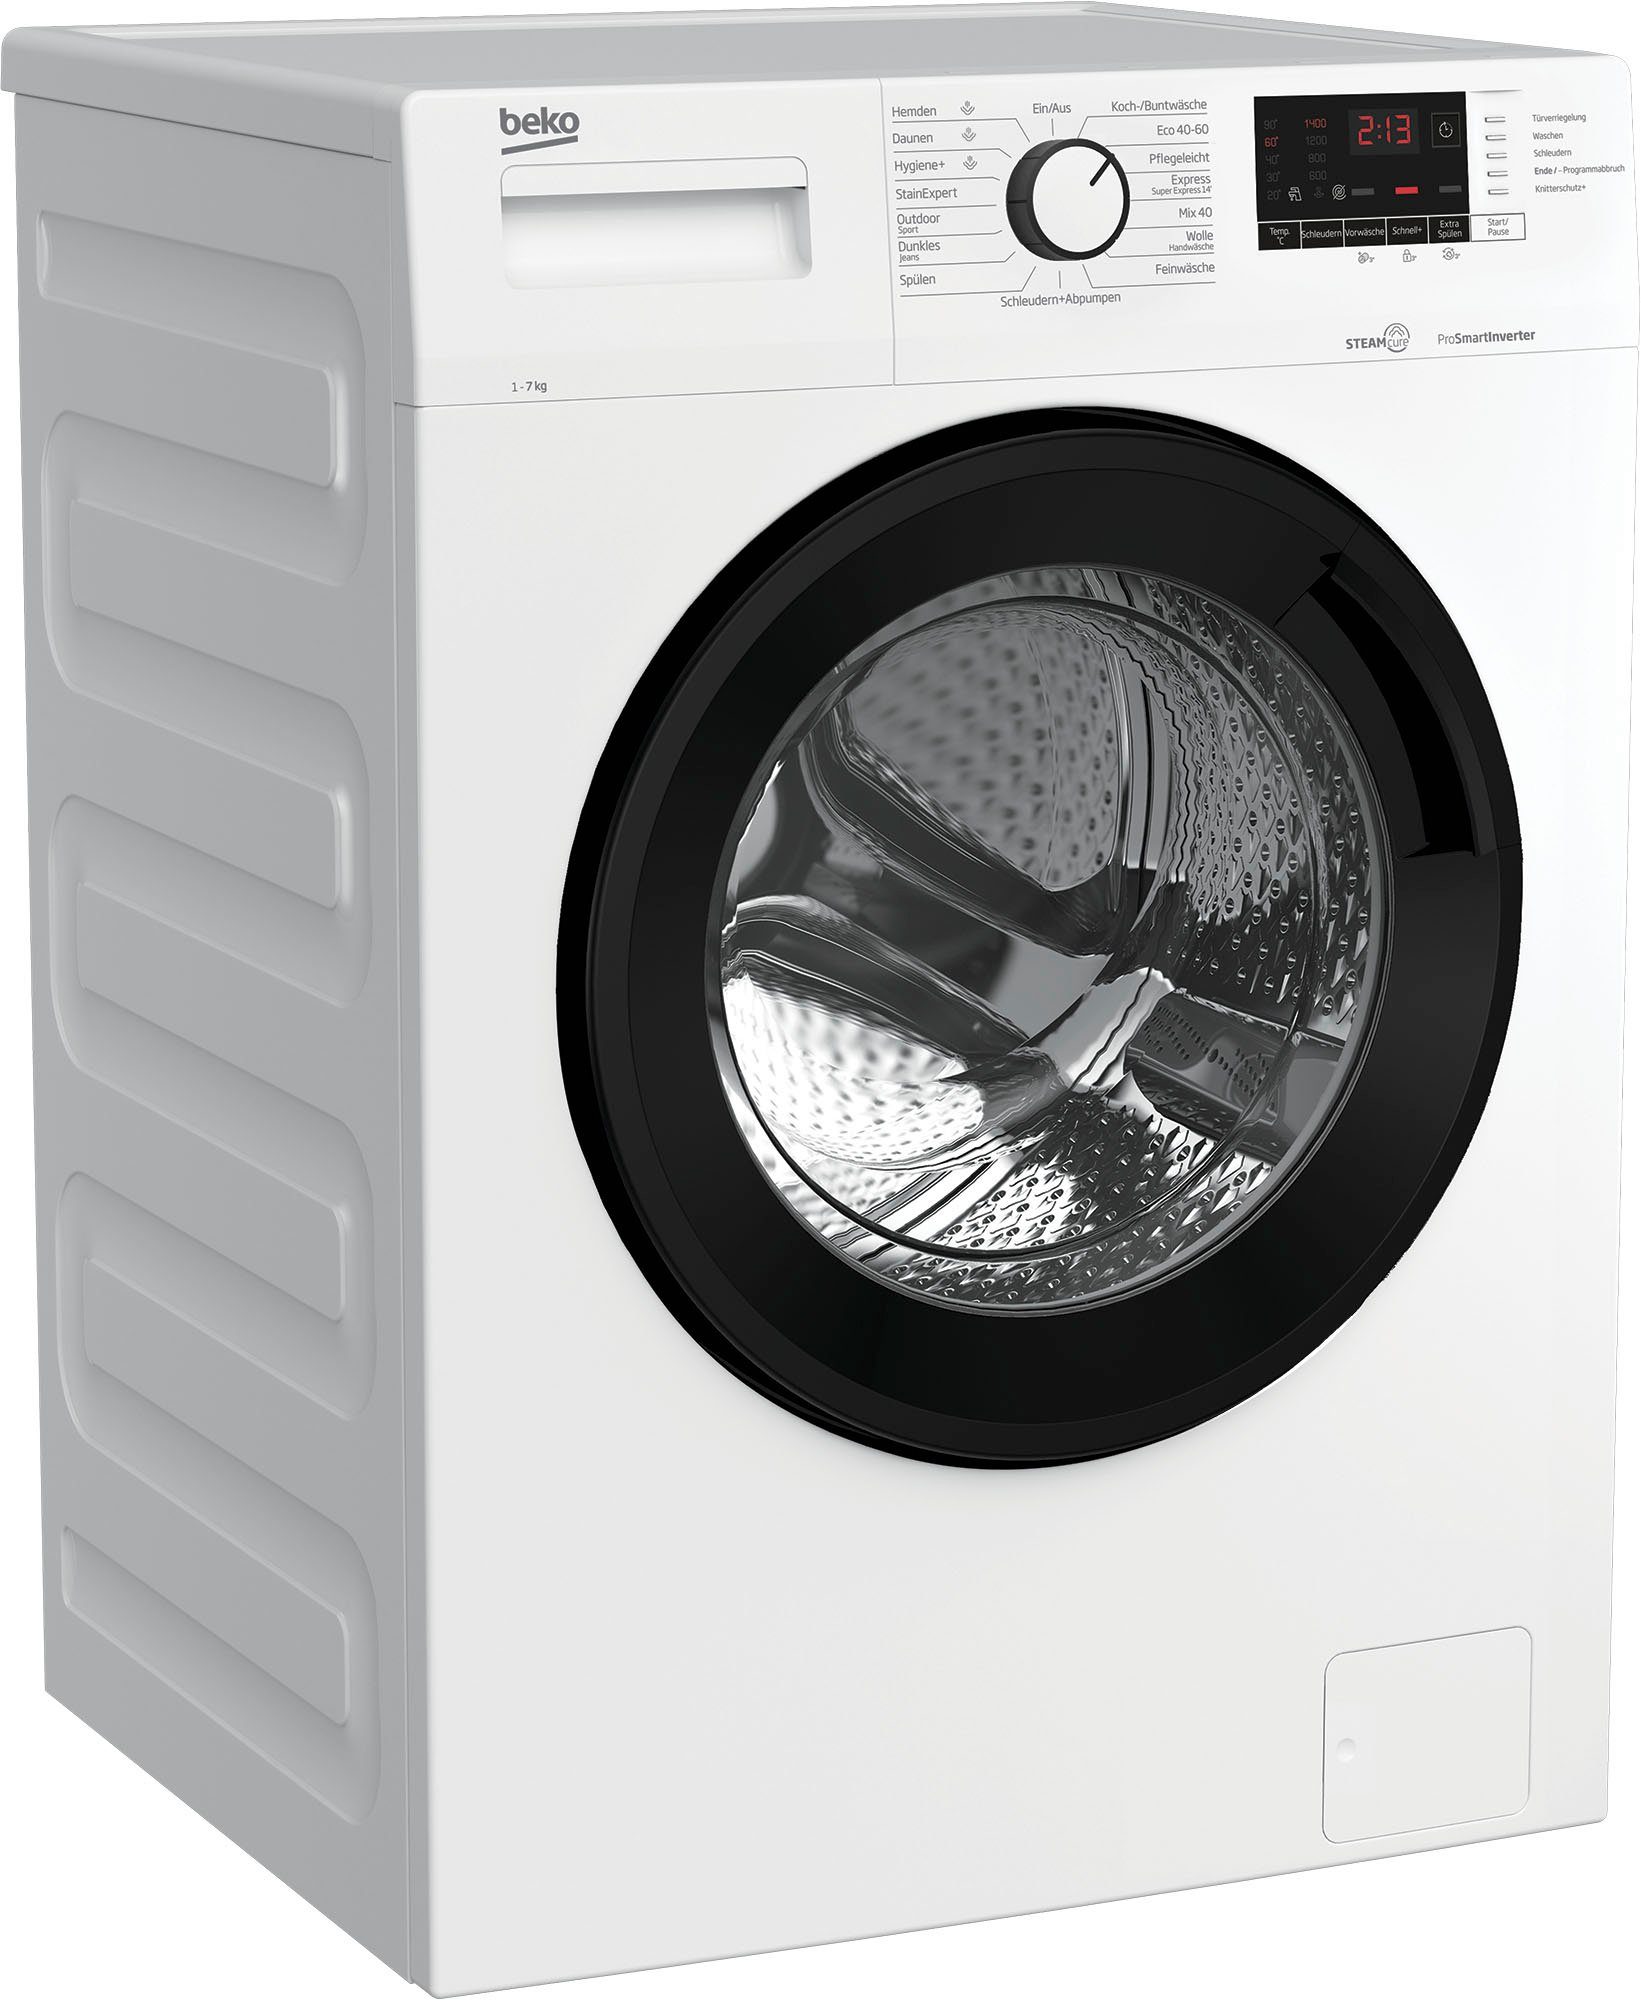 BEKO Waschmaschine WML71432NPA 7176681300, 1400 7 kg, U/min